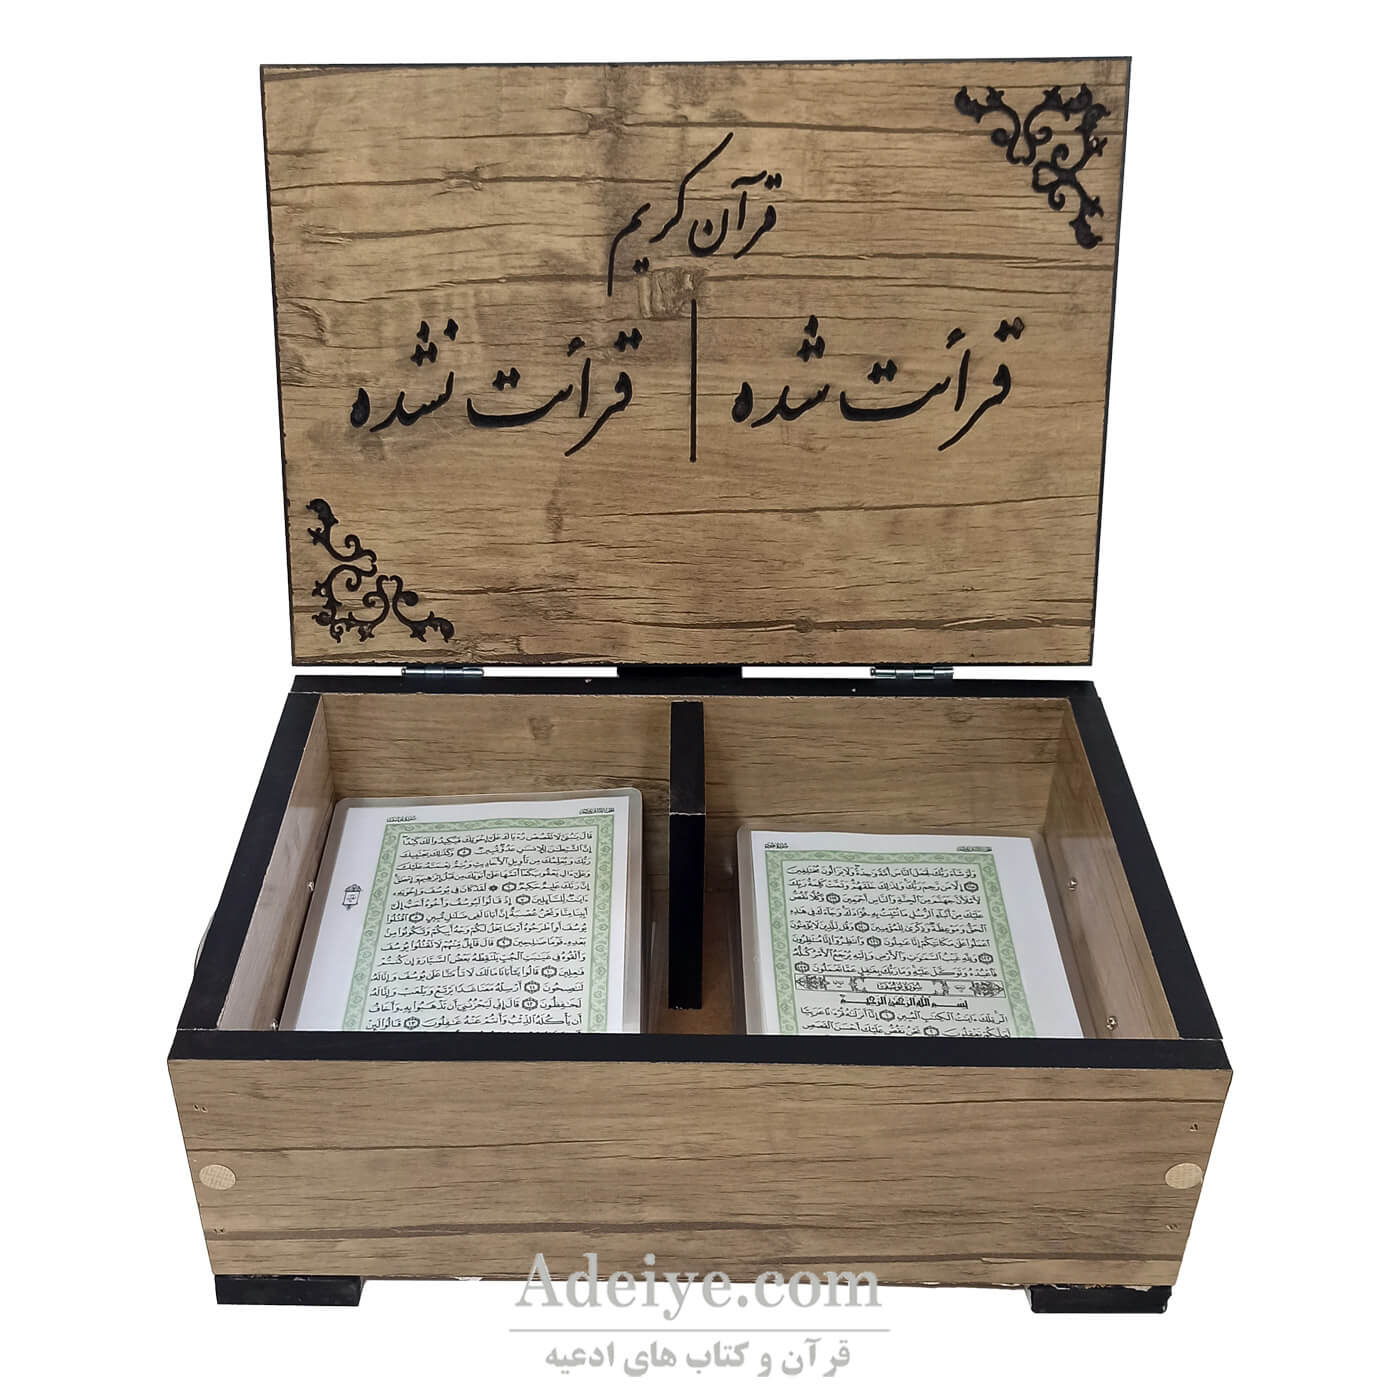 قرآن بدون ترجمه پرس شده مخصوص حفظ اسوه با جعبه رومیزی